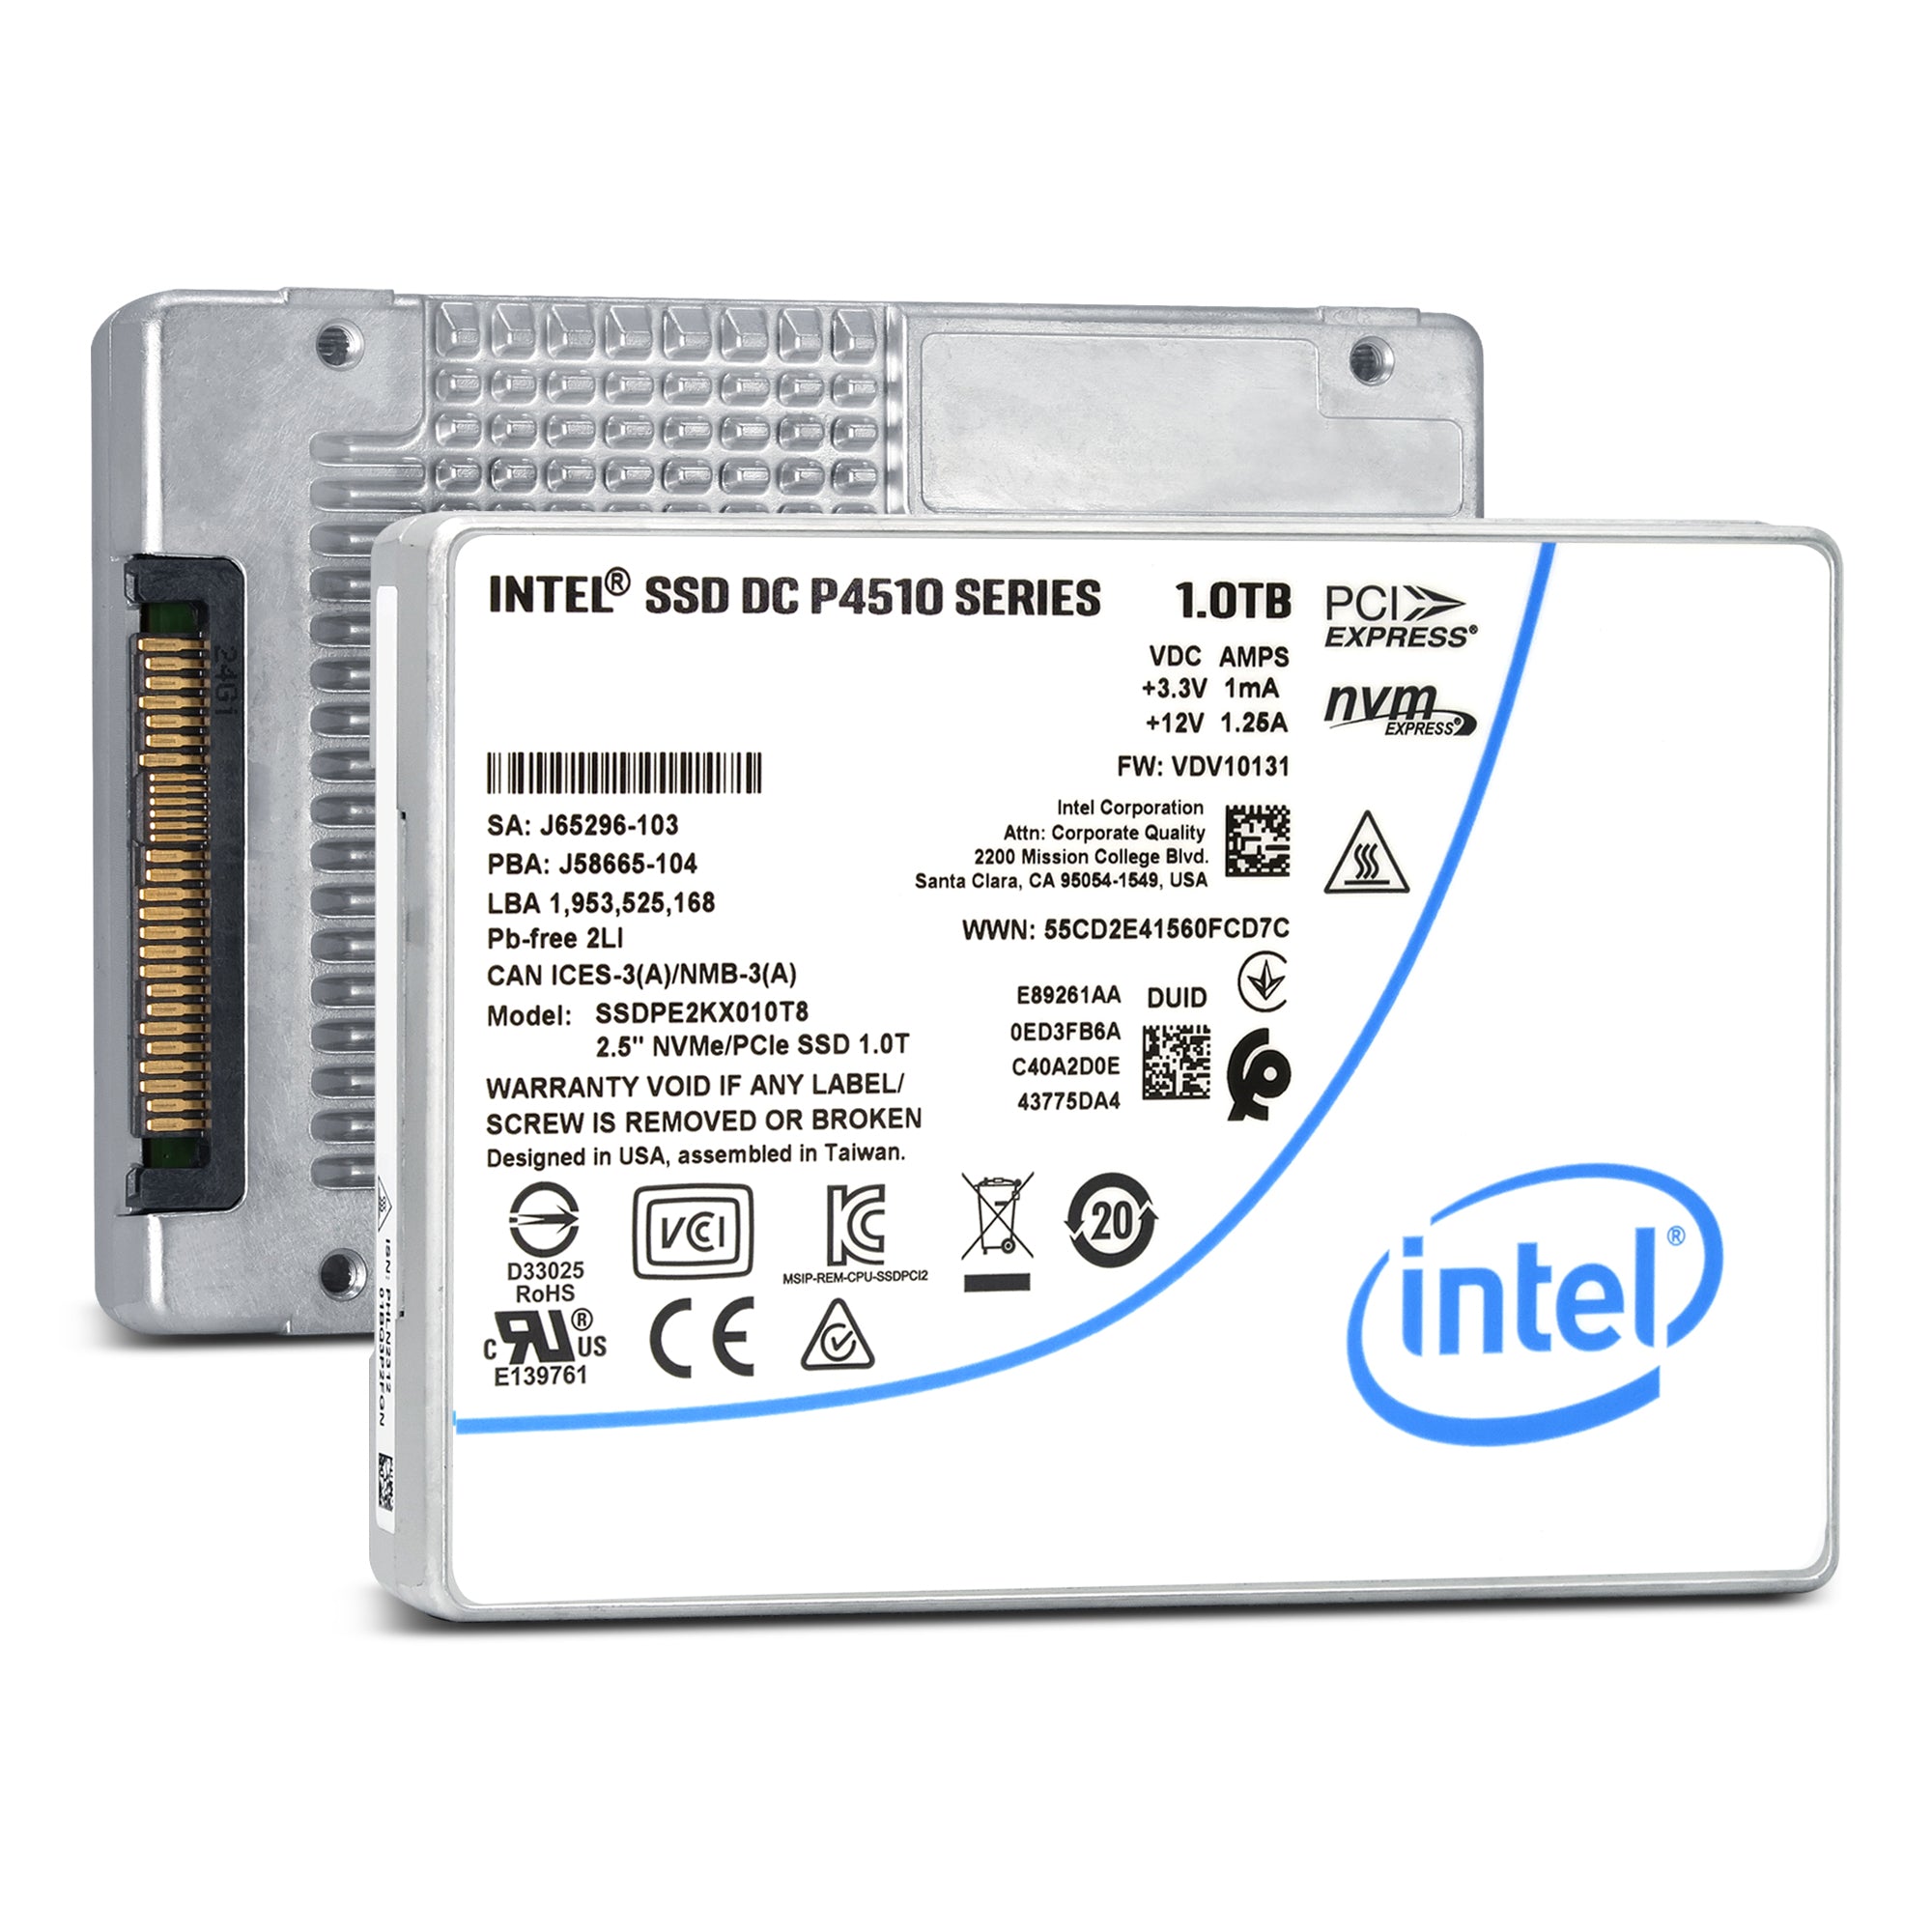 Intel P4510 SSDPE2KX010T801 1TB PCIe Gen 2.5" SSD —